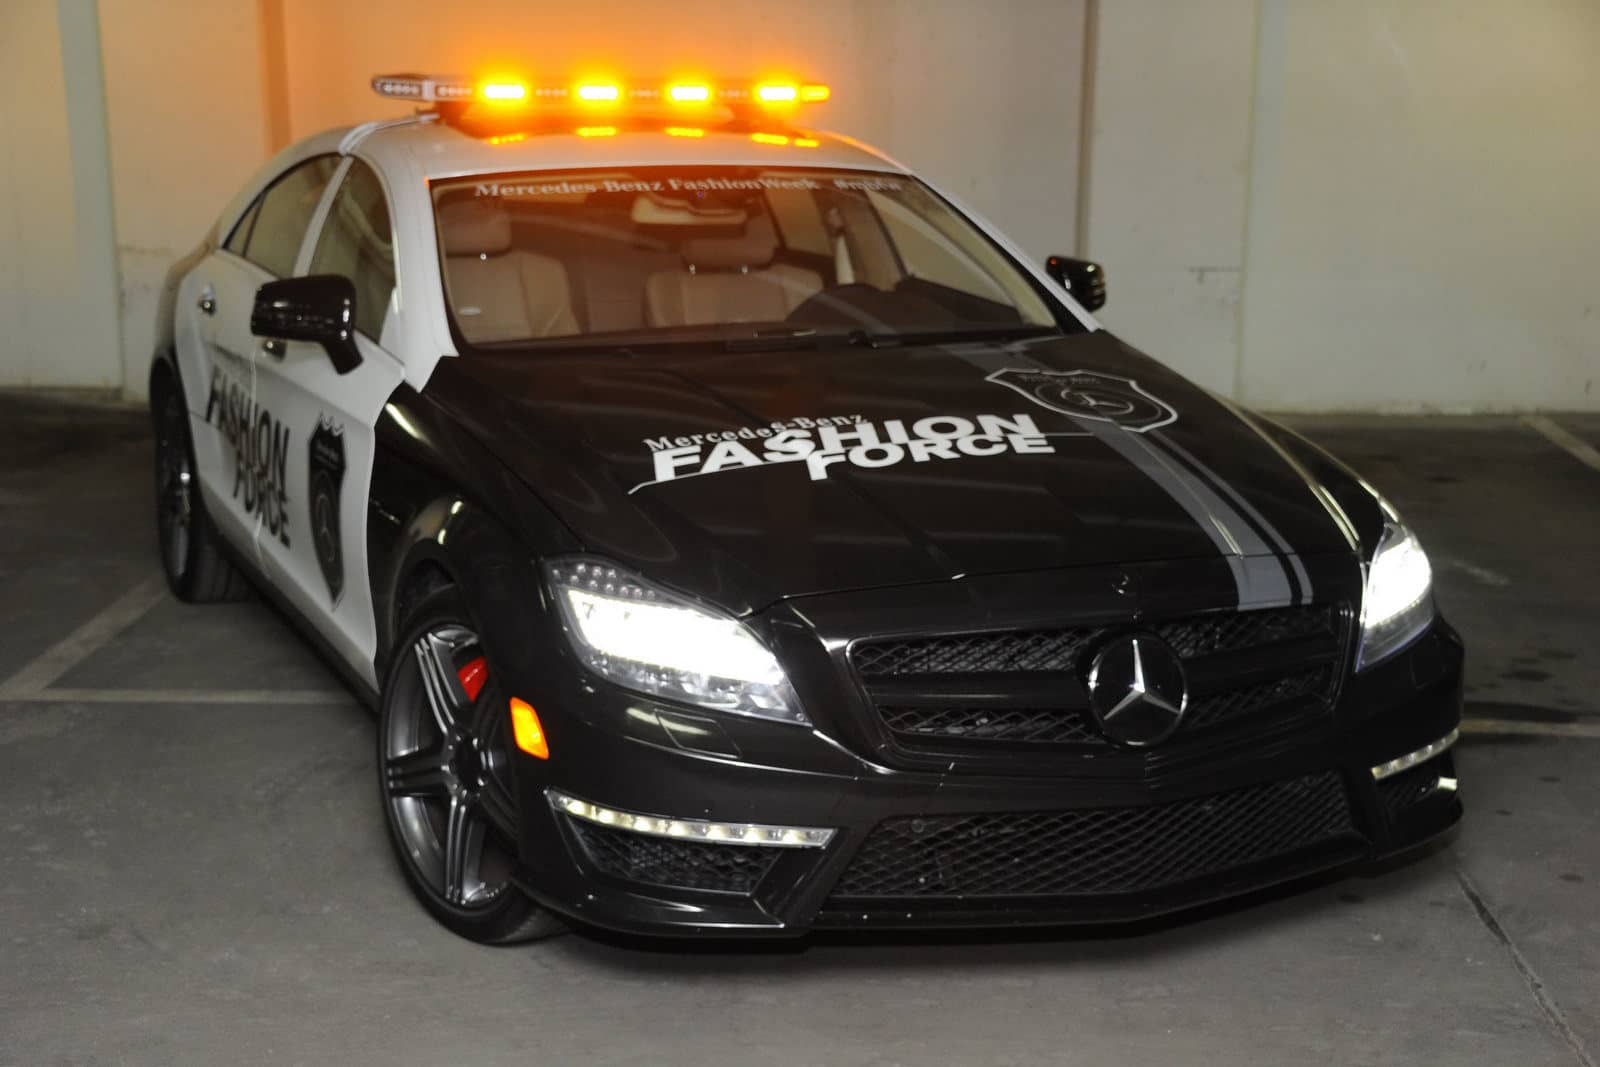 2012 Mercedes CLS 63 AMG Fashion Police Car 1